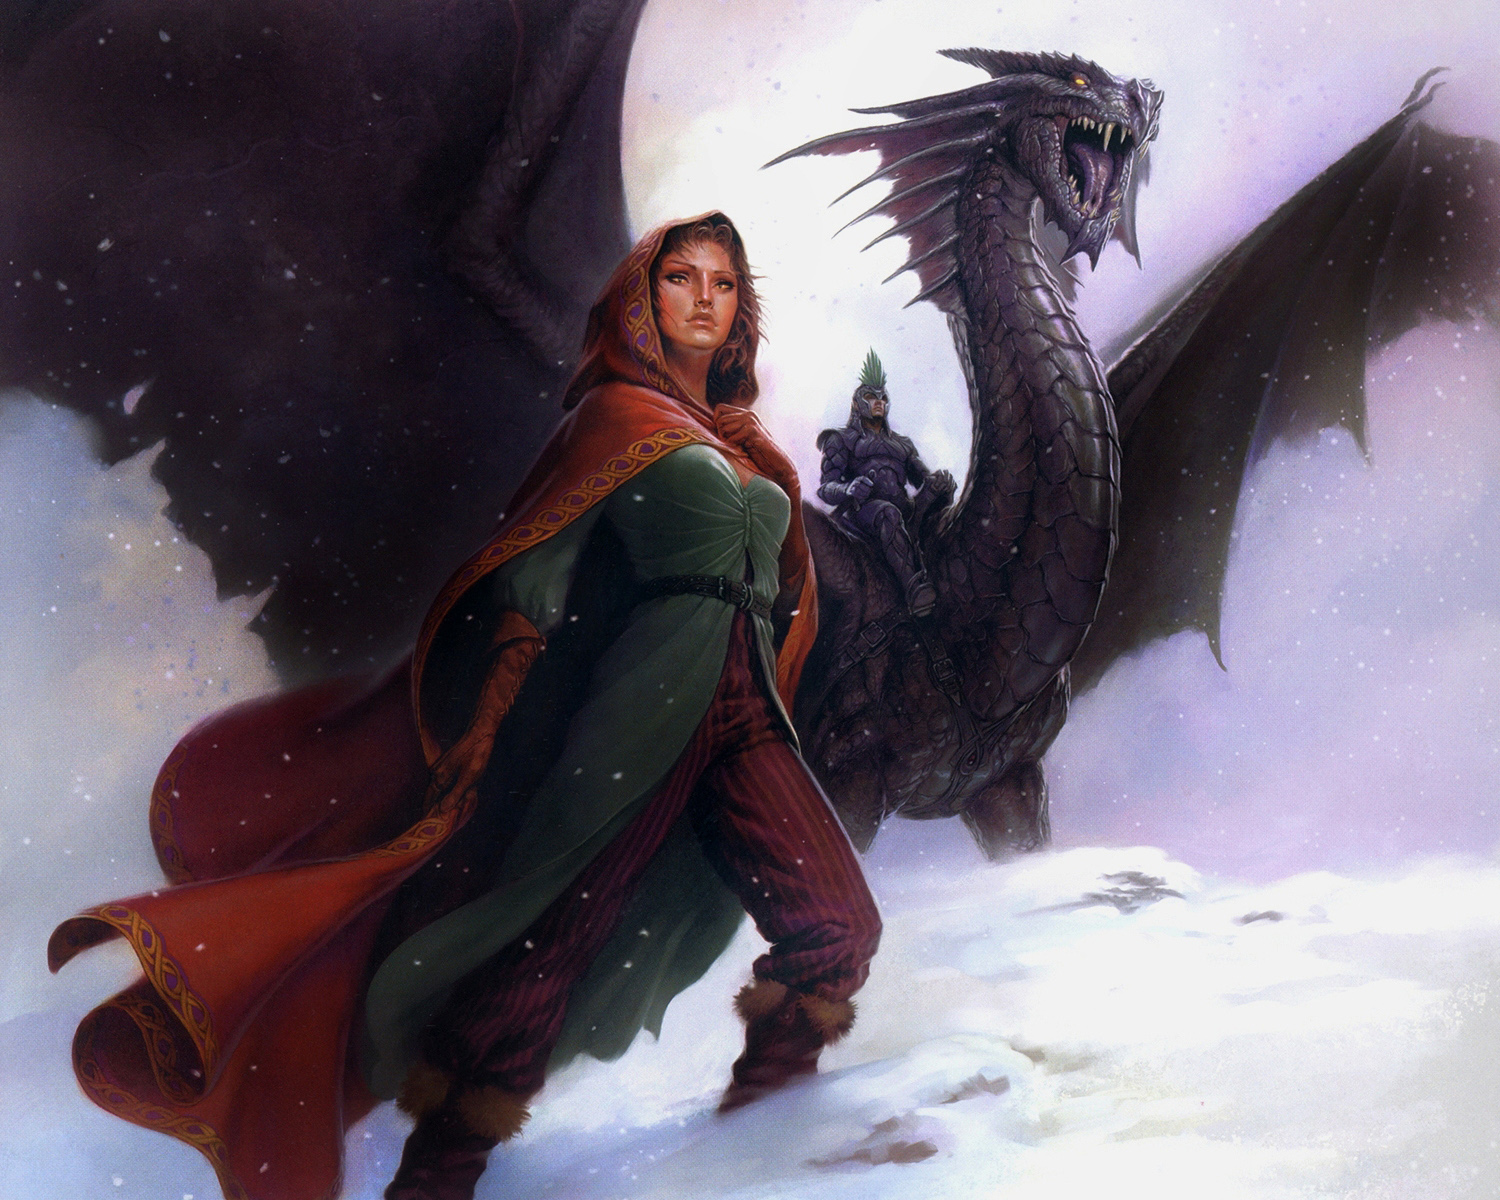 3d обои Так они идут навстречу приключениям-он на свирепом, но подчинённом его стальной воле, огромном драконе, она, красивая и сильная девушка, неизменно рядом, легко скользя по снегу...  драконы # 36006